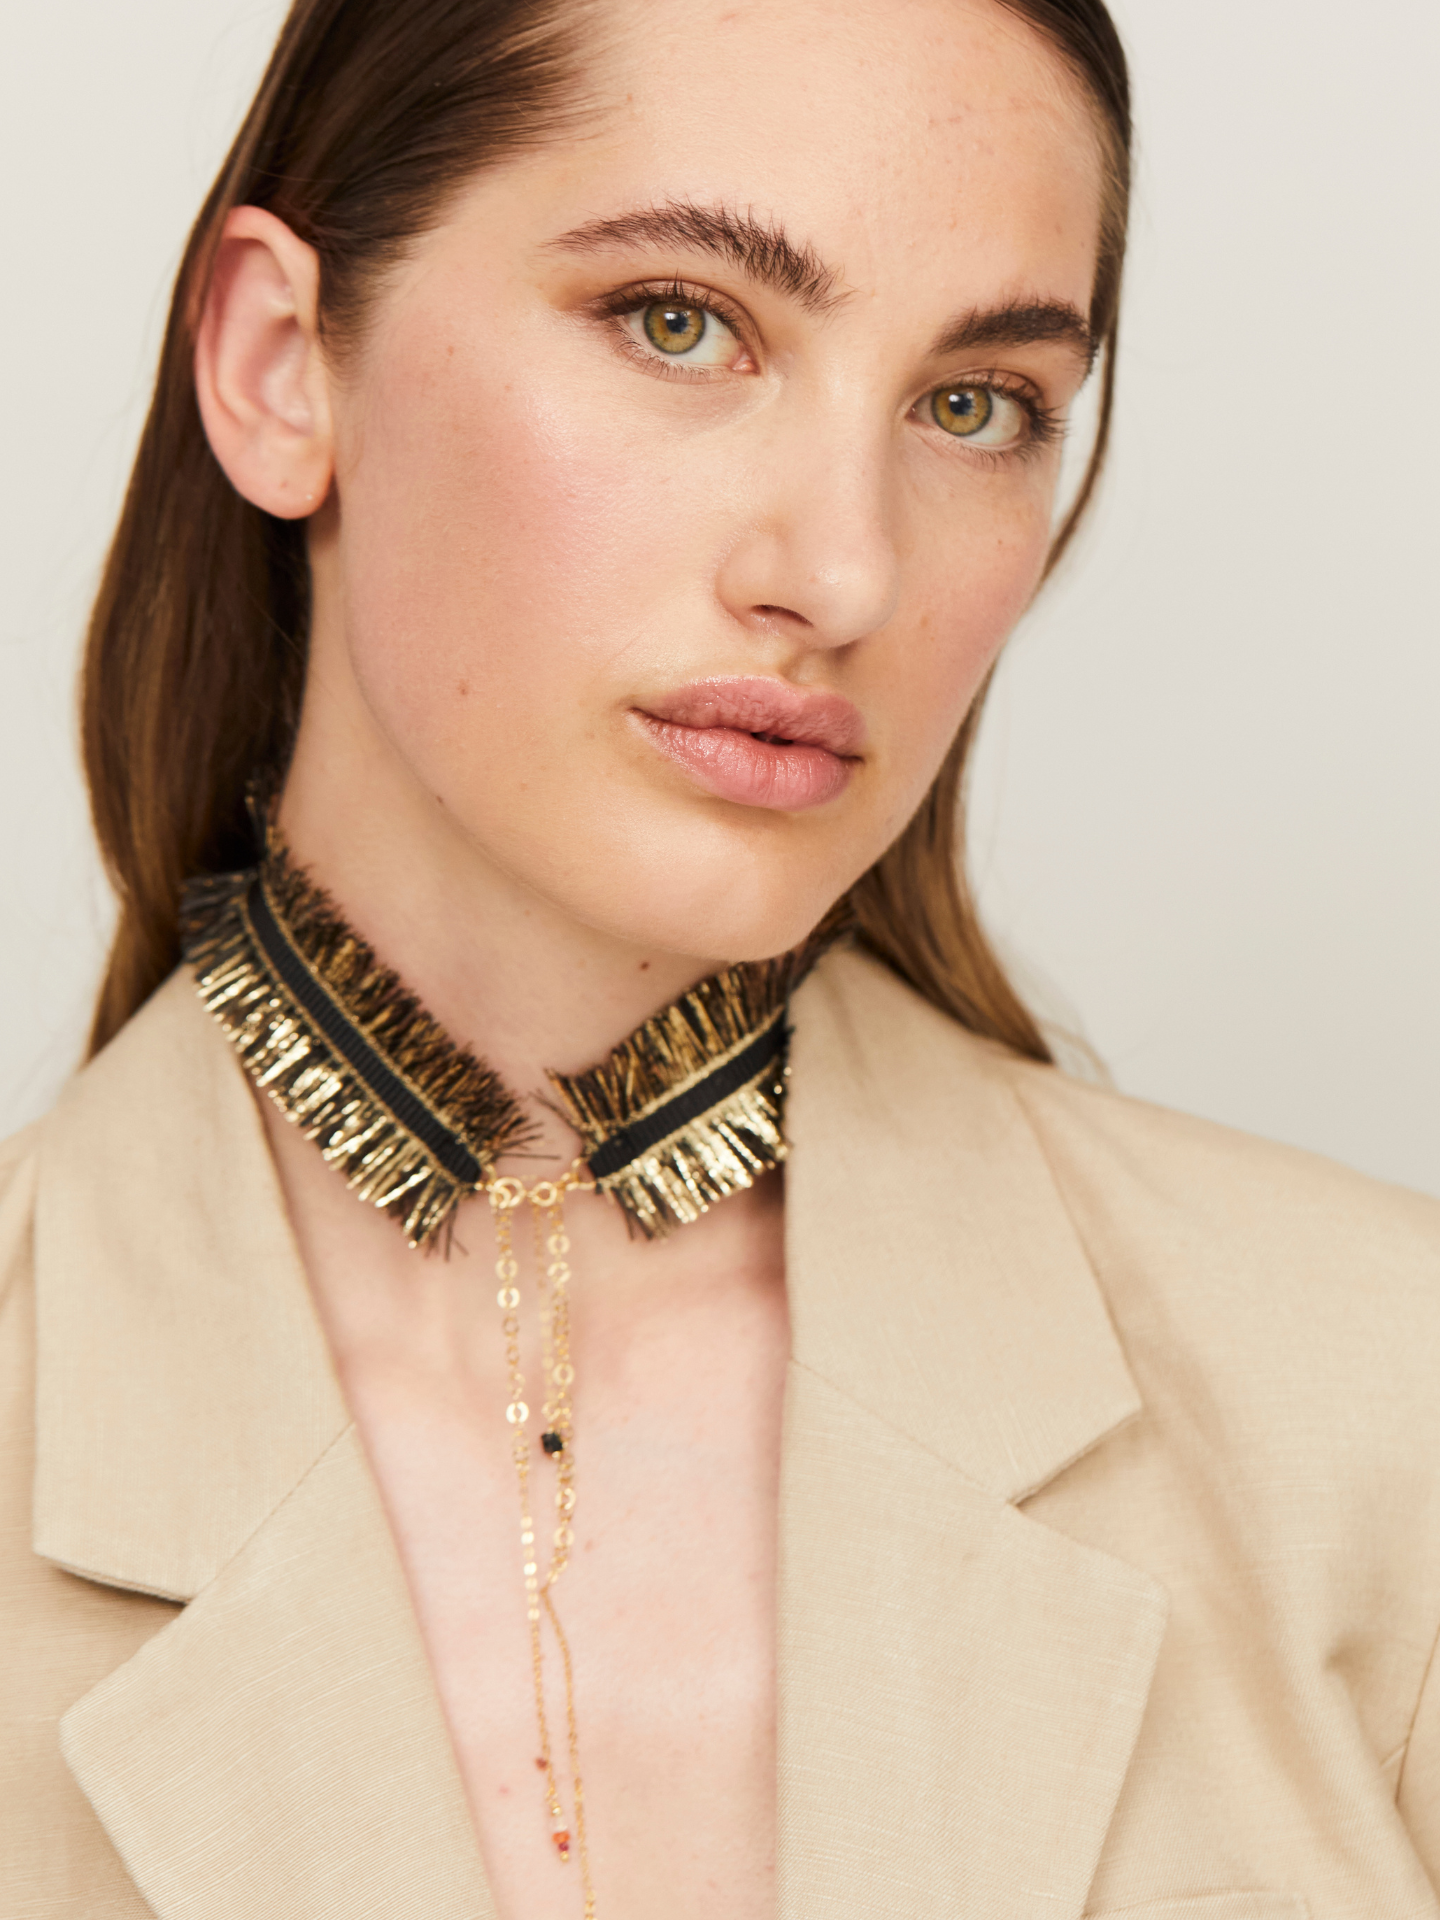 Exzentrische Halskette in Schwarz und Gold, getragen von einer jungen, attraktiven Frau, die zusätzlich einen hellen Blazer trägt und in die Kamera guckt.